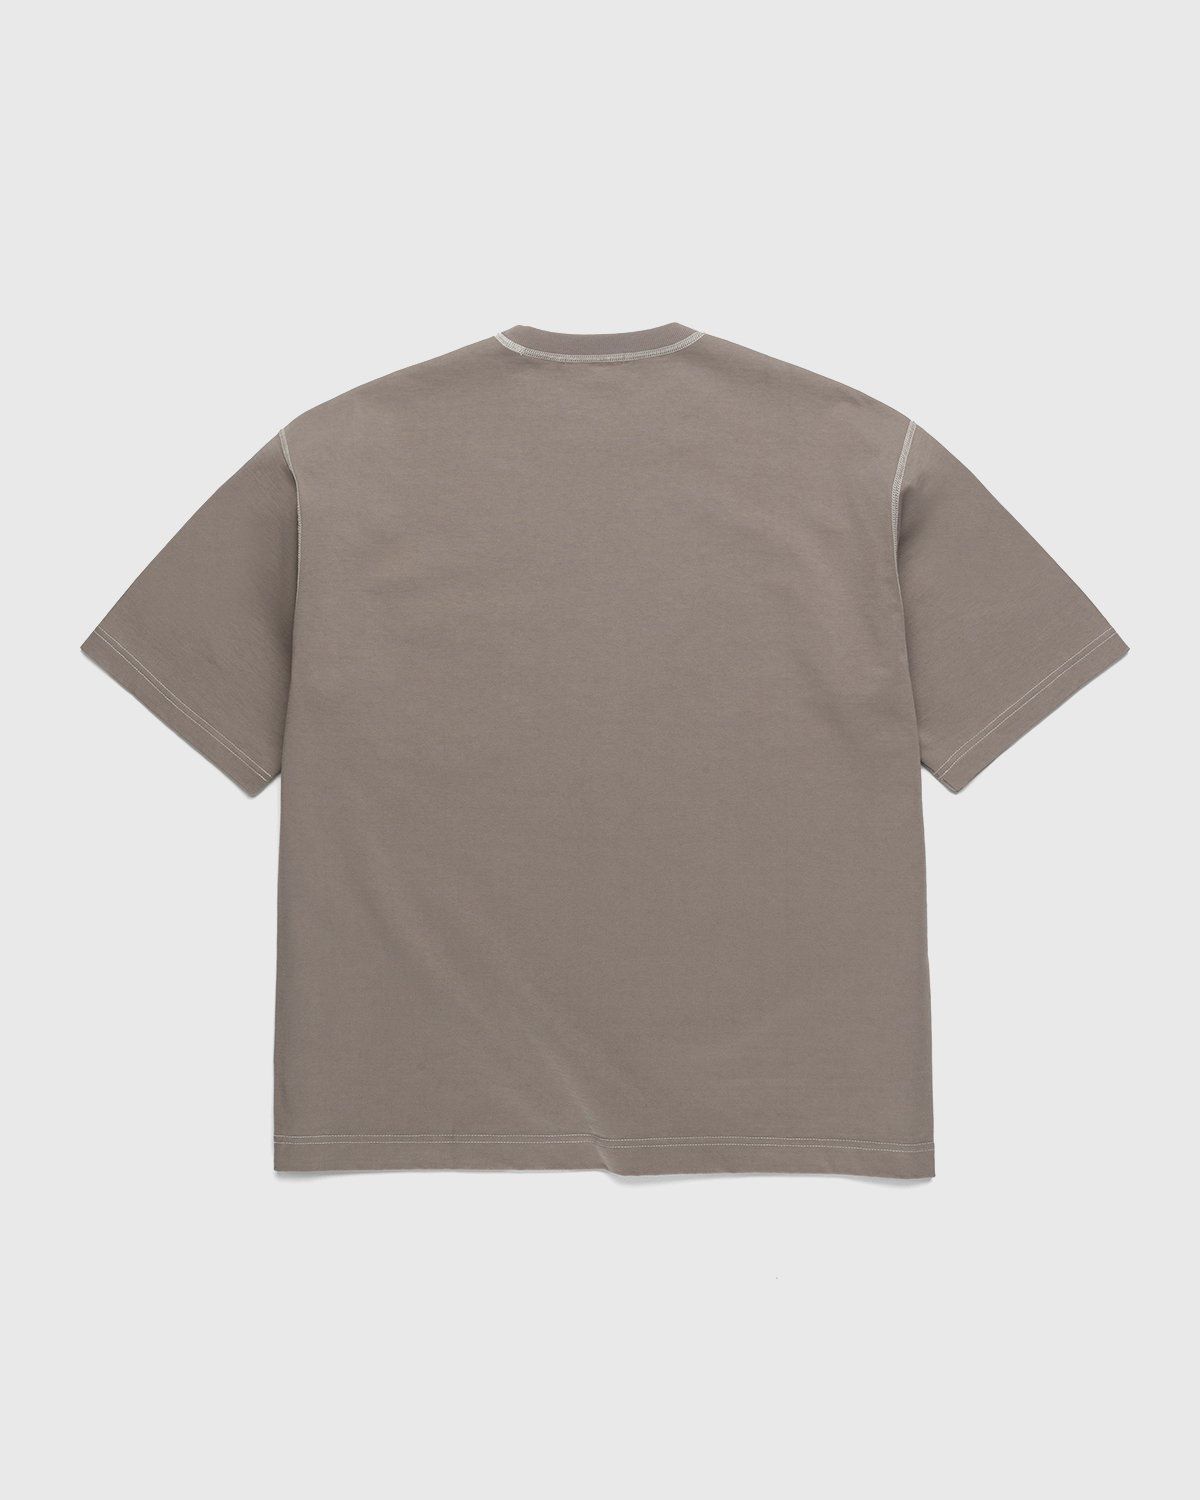 Auralee – Cotton Knit Pocket T-Shirt Grey Beige - T-shirts - Beige - Image 2